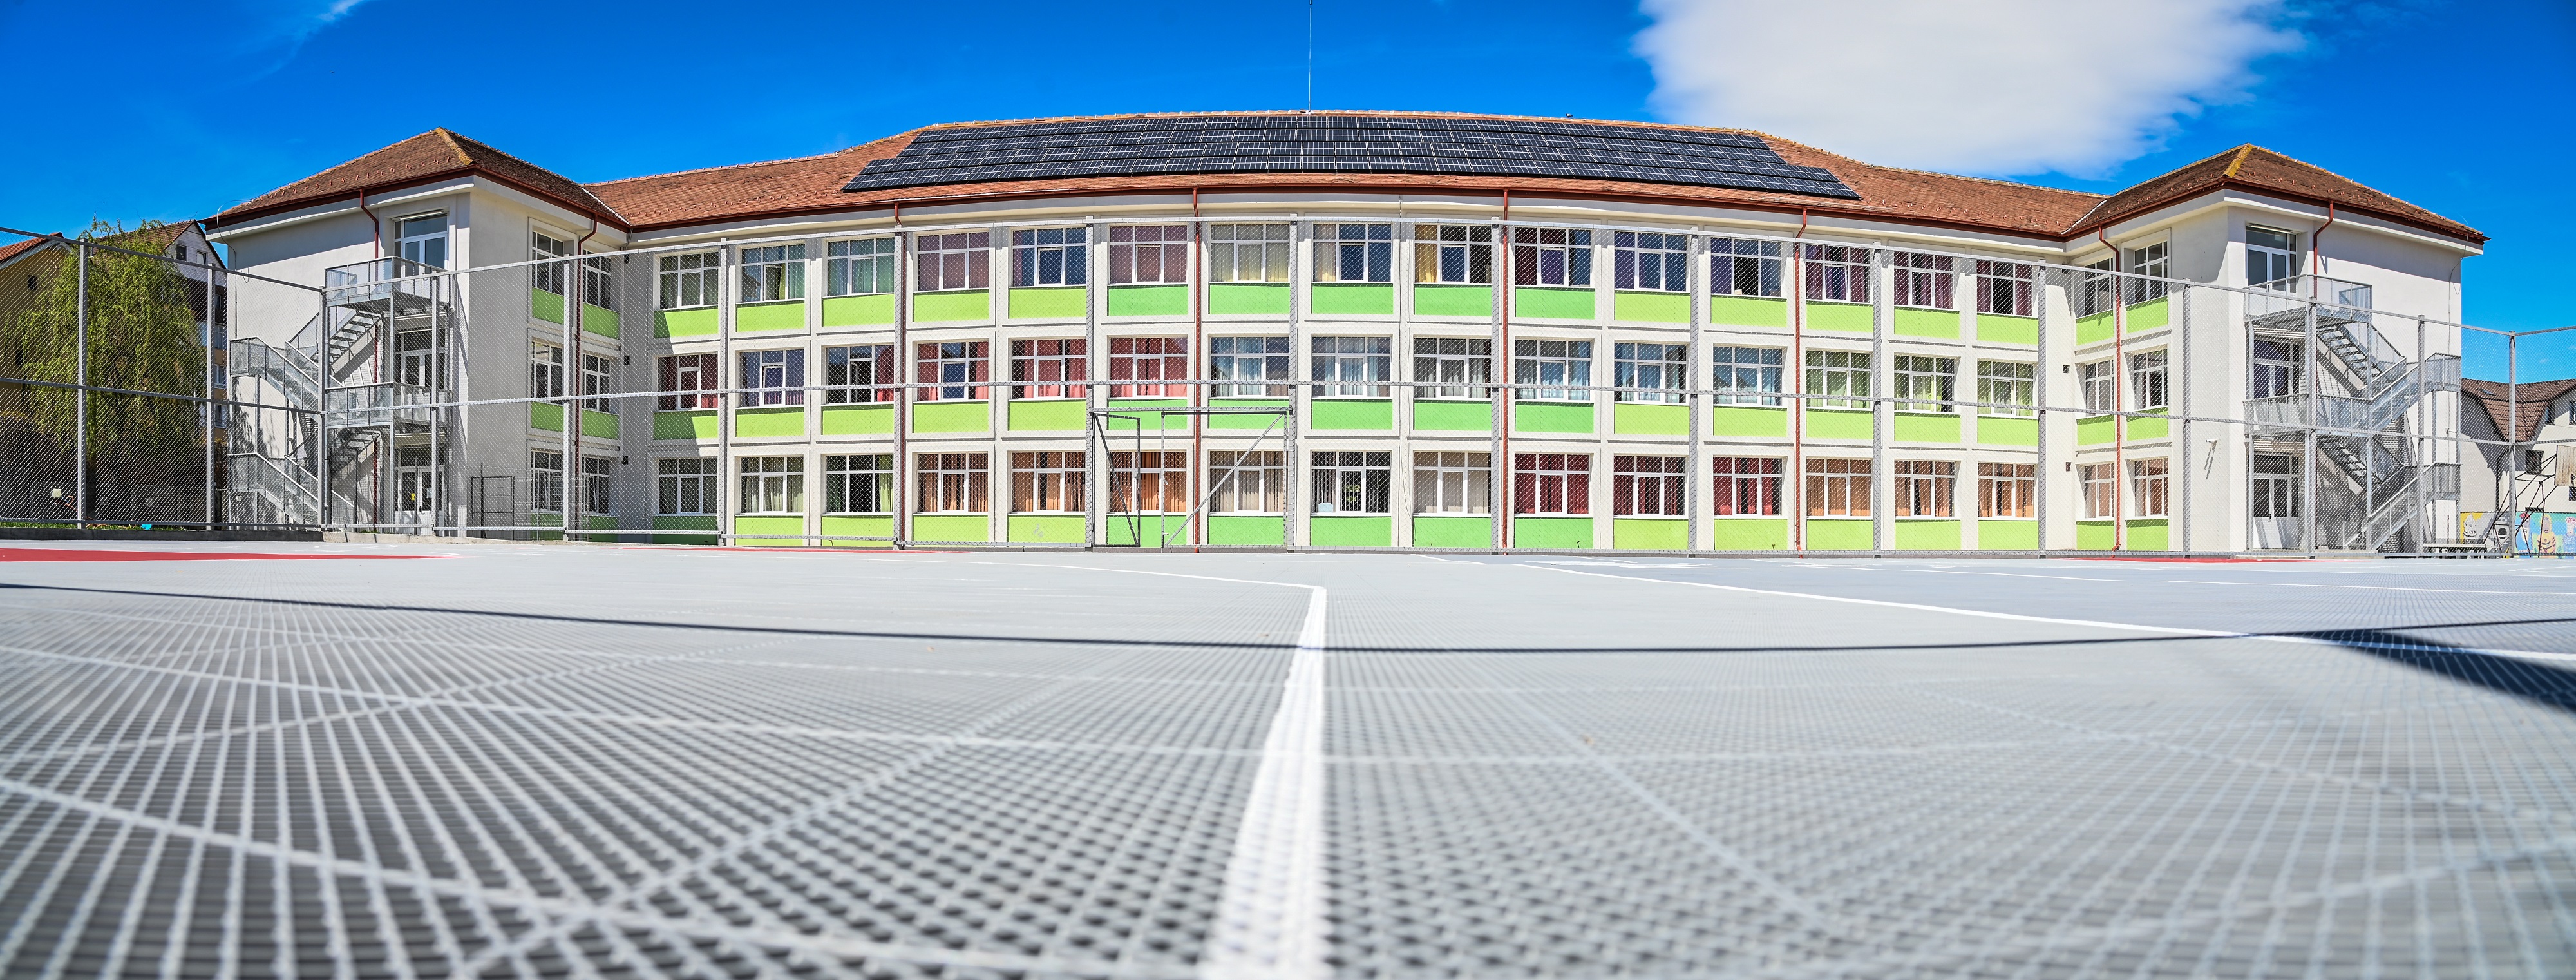 Școala Radu Selejan și școala 21, modernizate și mai eficiente energetic